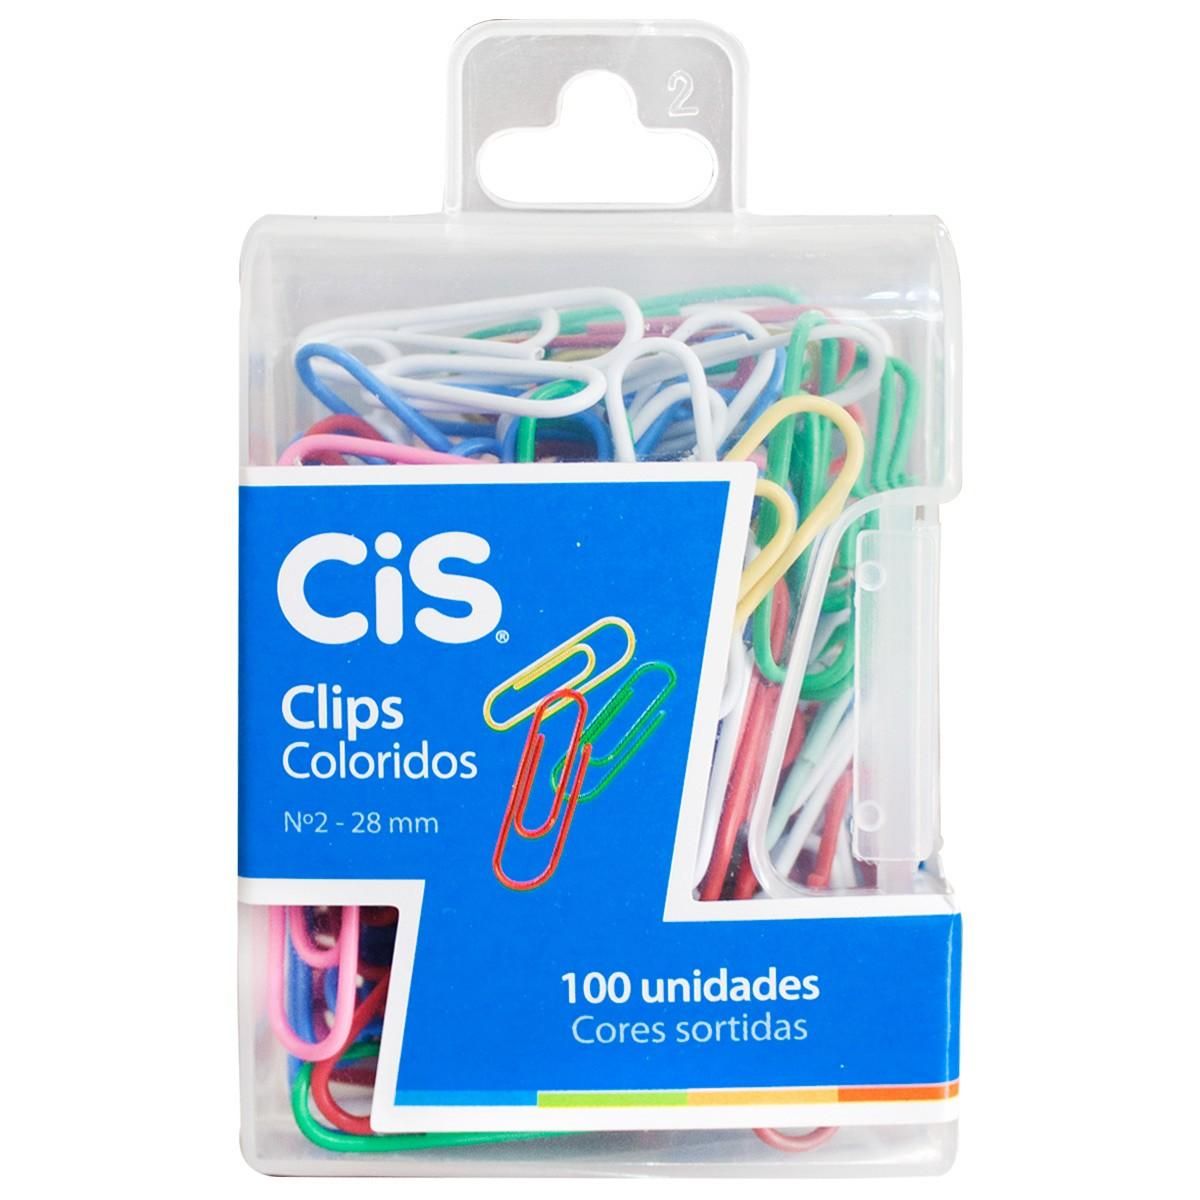 Clips Coloridos N2 - Cis